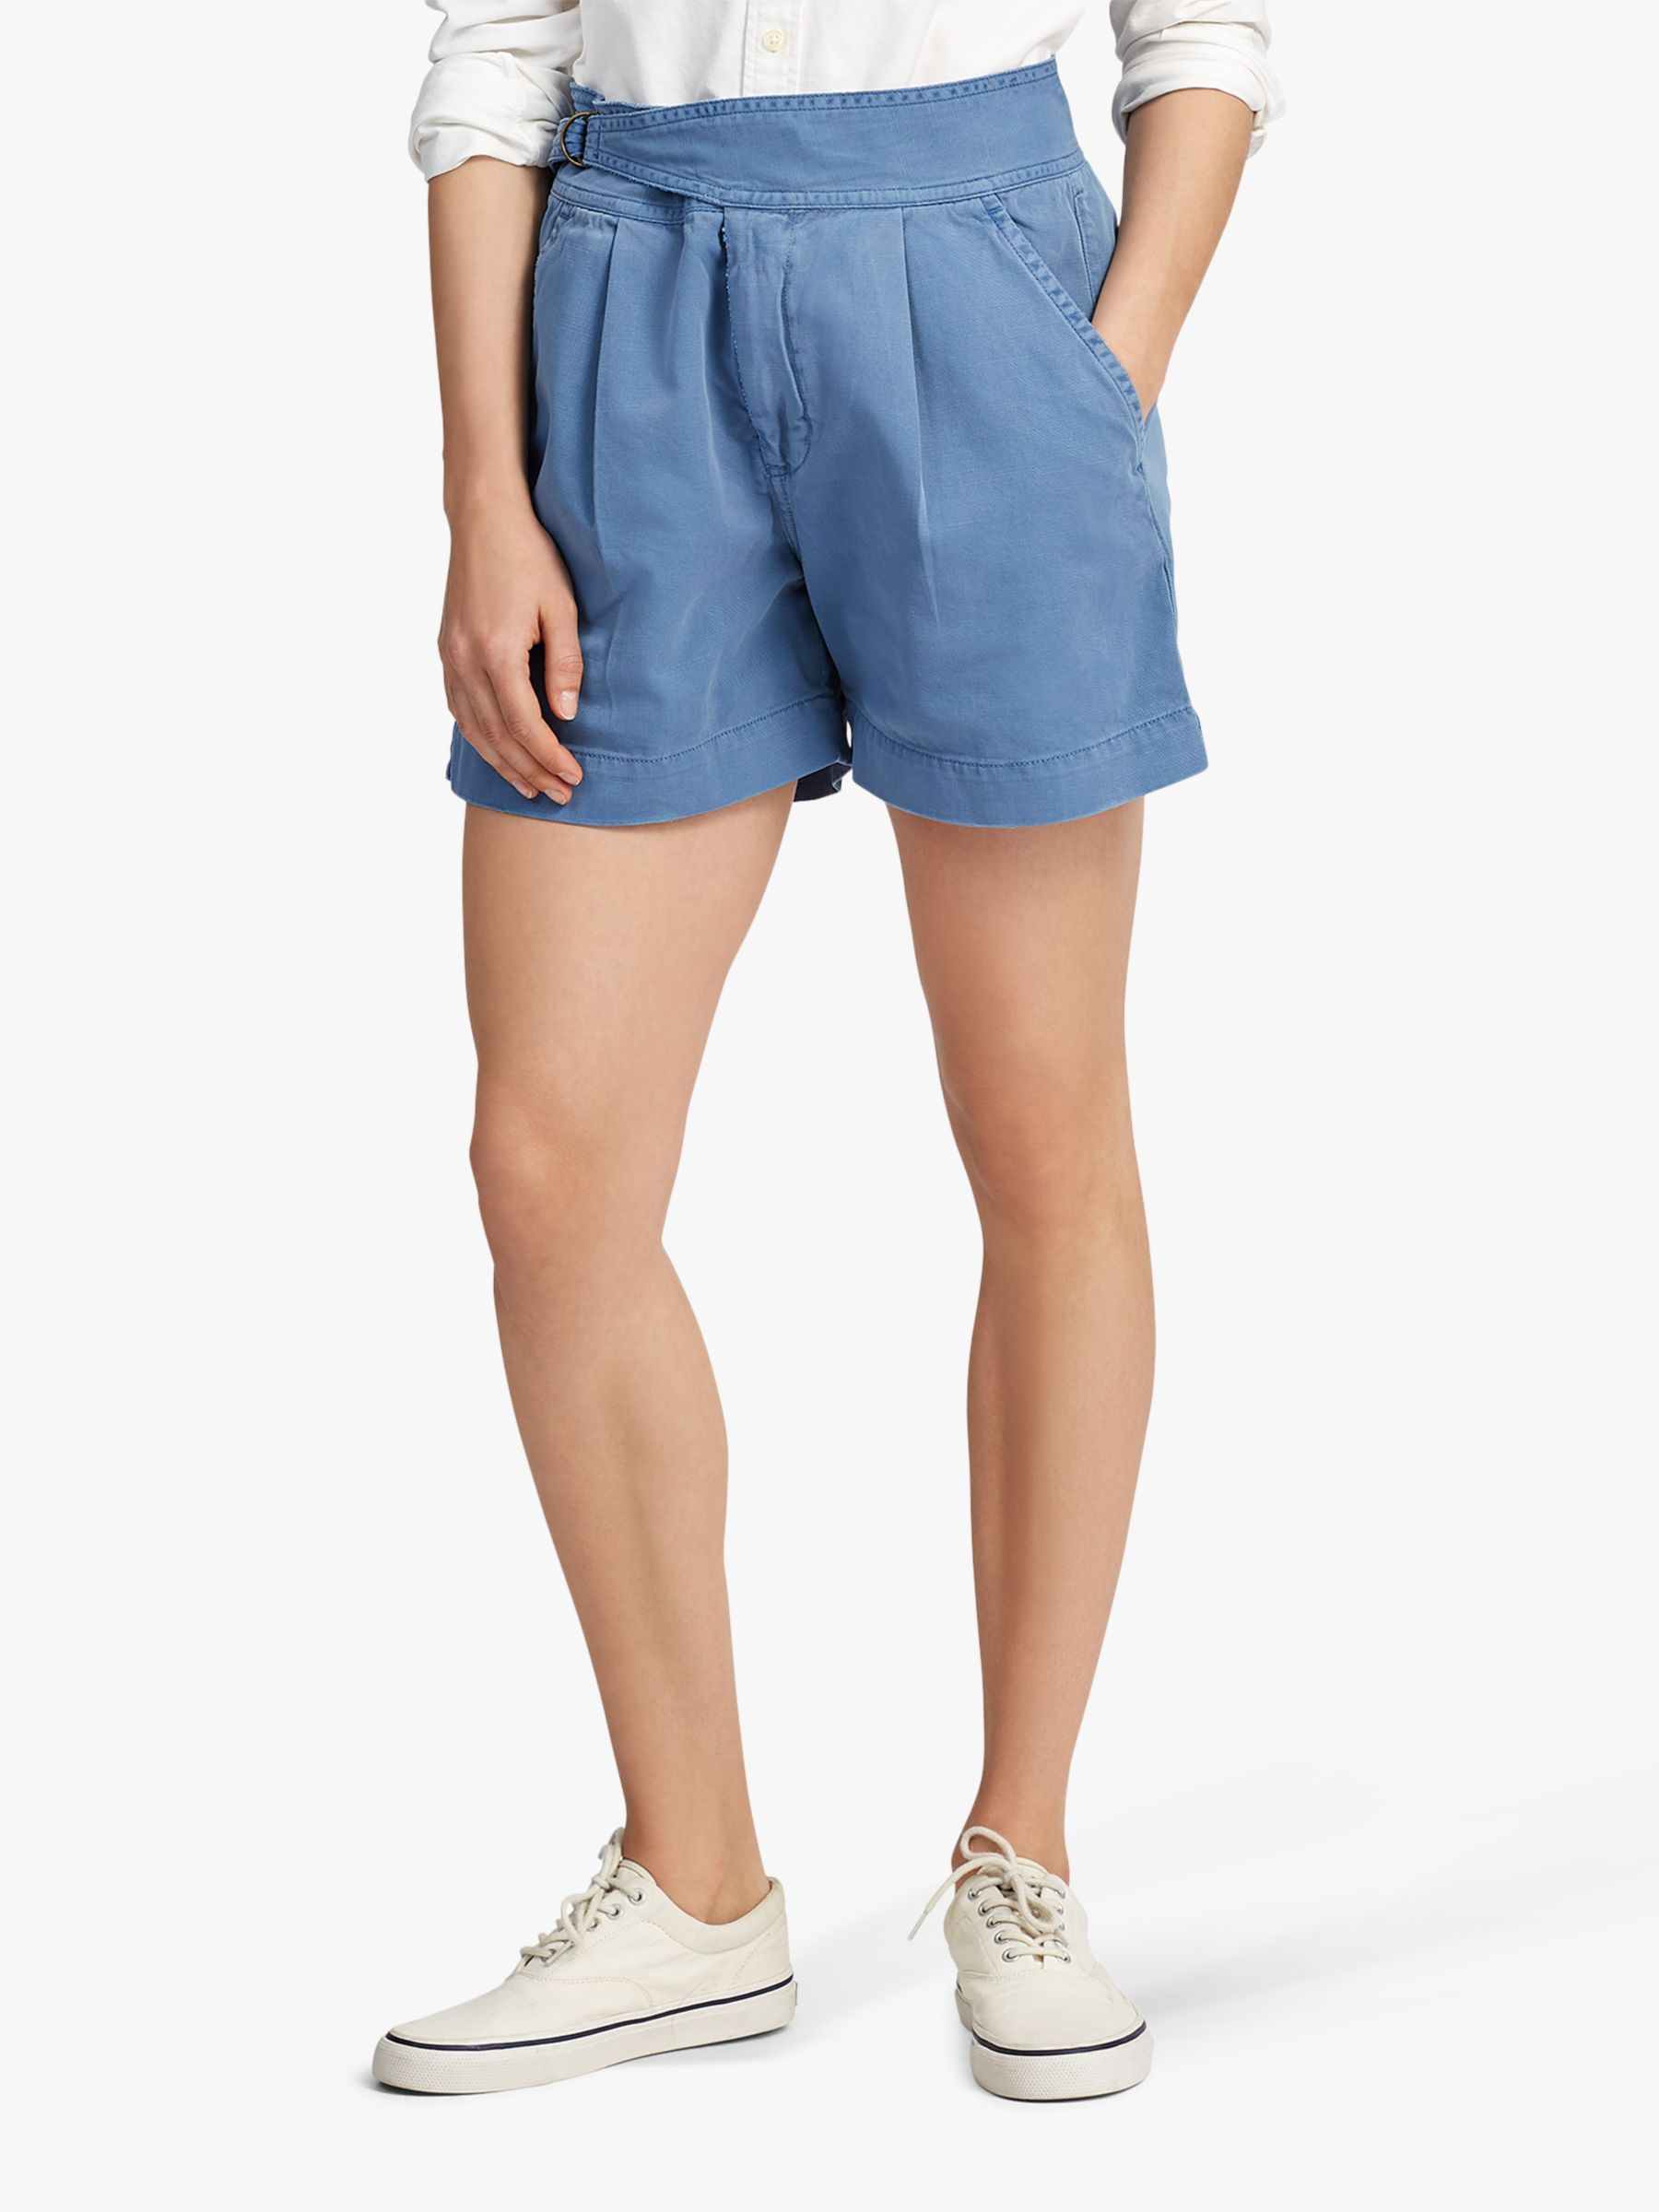 polo ralph lauren shorts womens